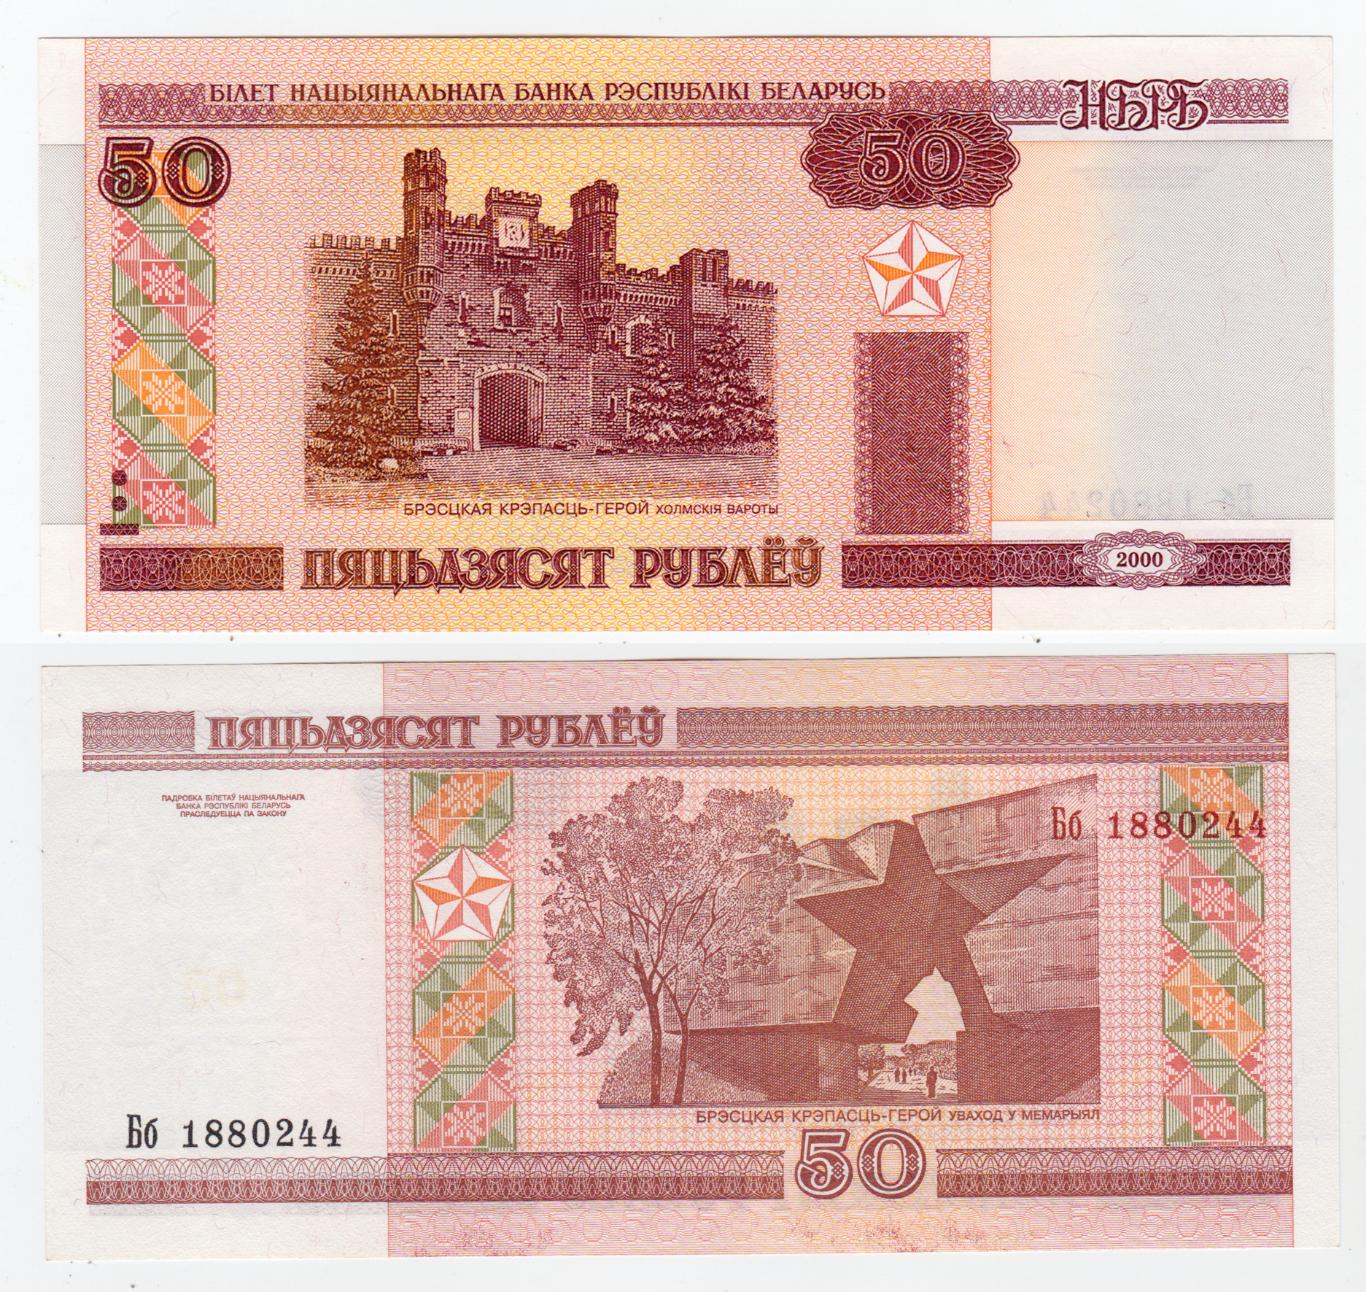 Беларусь 50 рублей 2000 aUNC - UNC 2